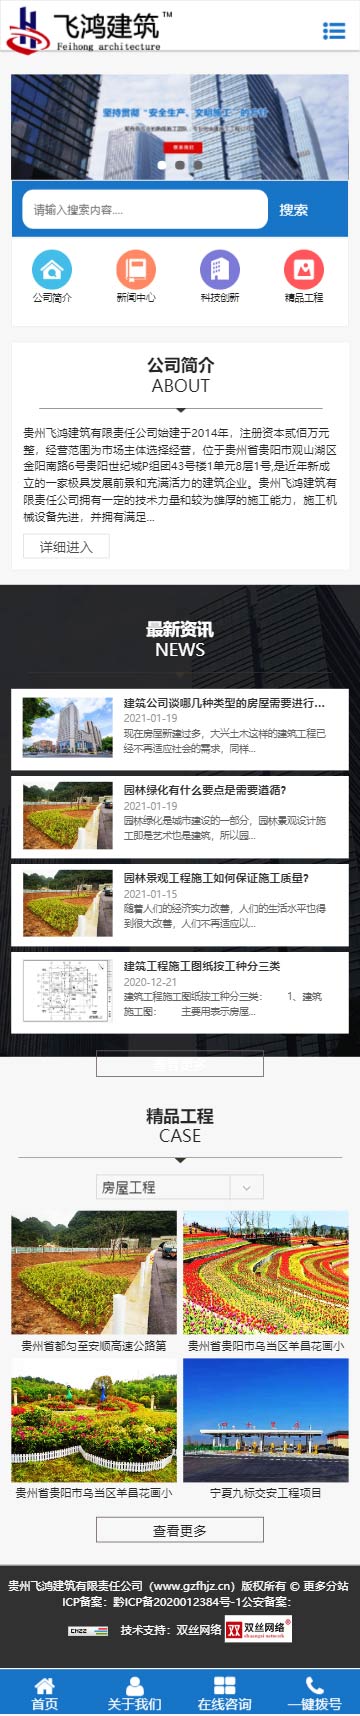 贵州建筑工程_贵阳建筑公司_贵州飞鸿建筑有限责任公司.jpg